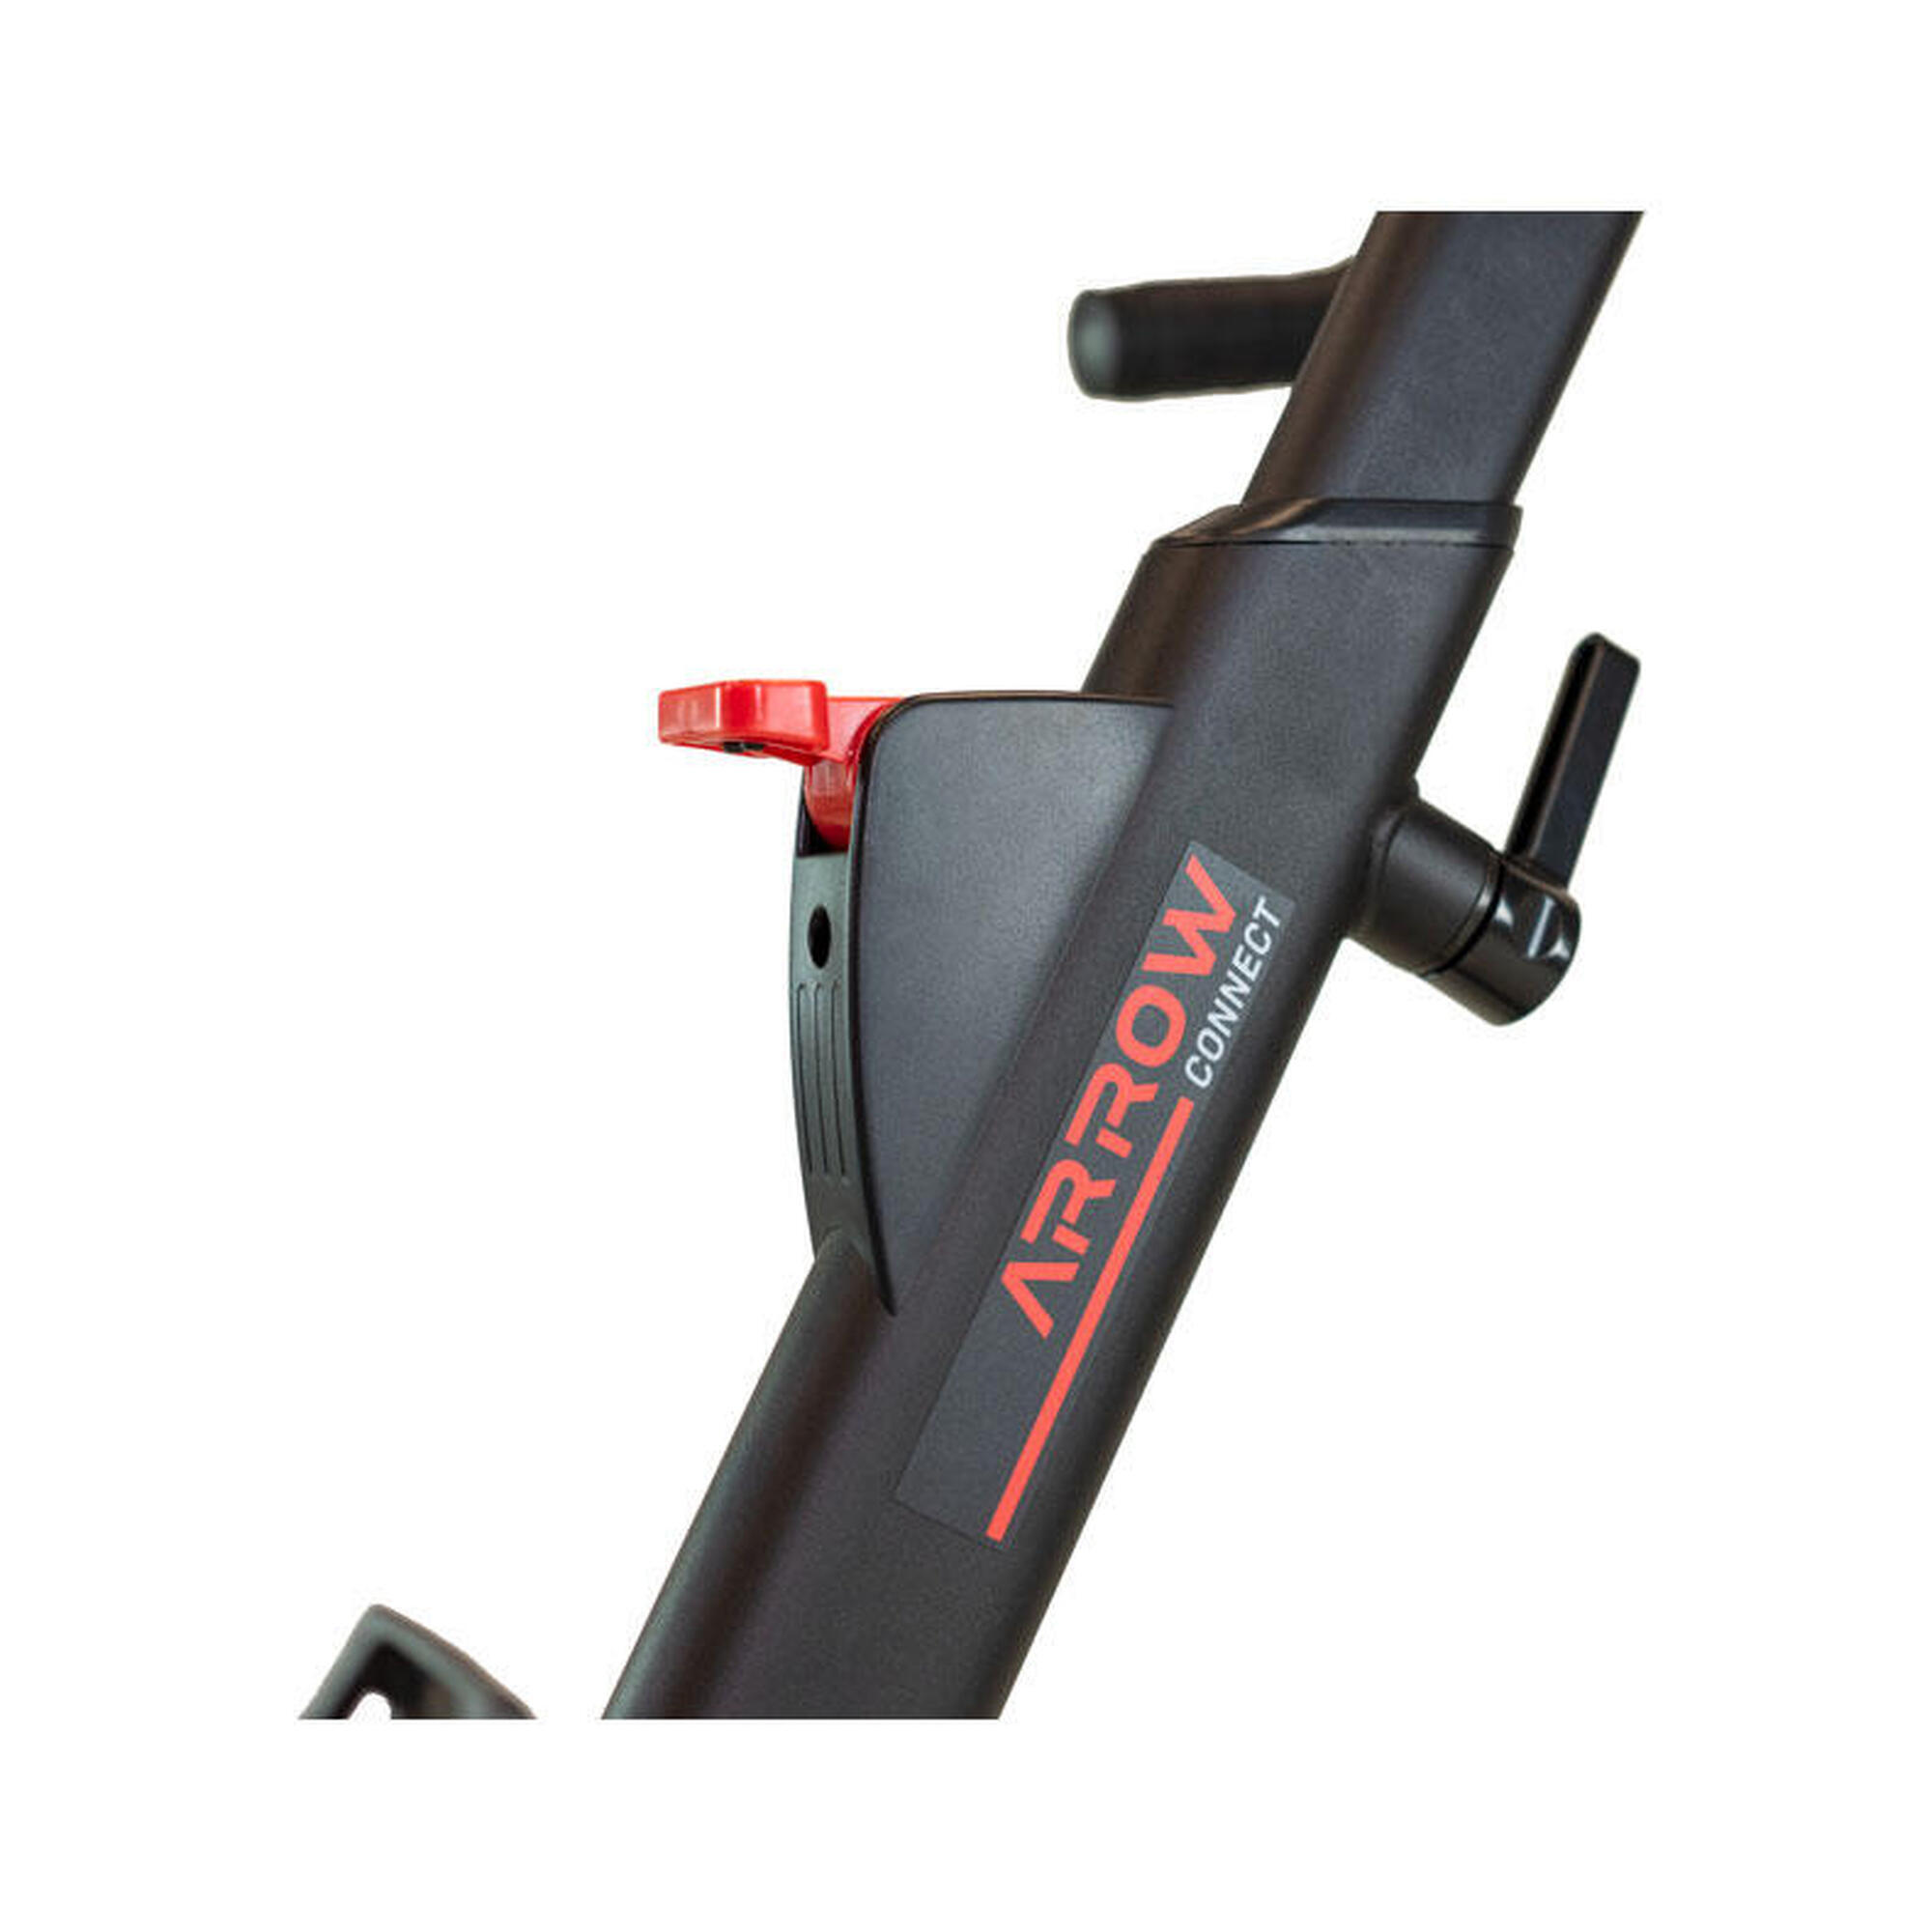 Smart Bike - Arrow Connect - Kinomap,Zwift,Trainerroad -Inertie 16kg